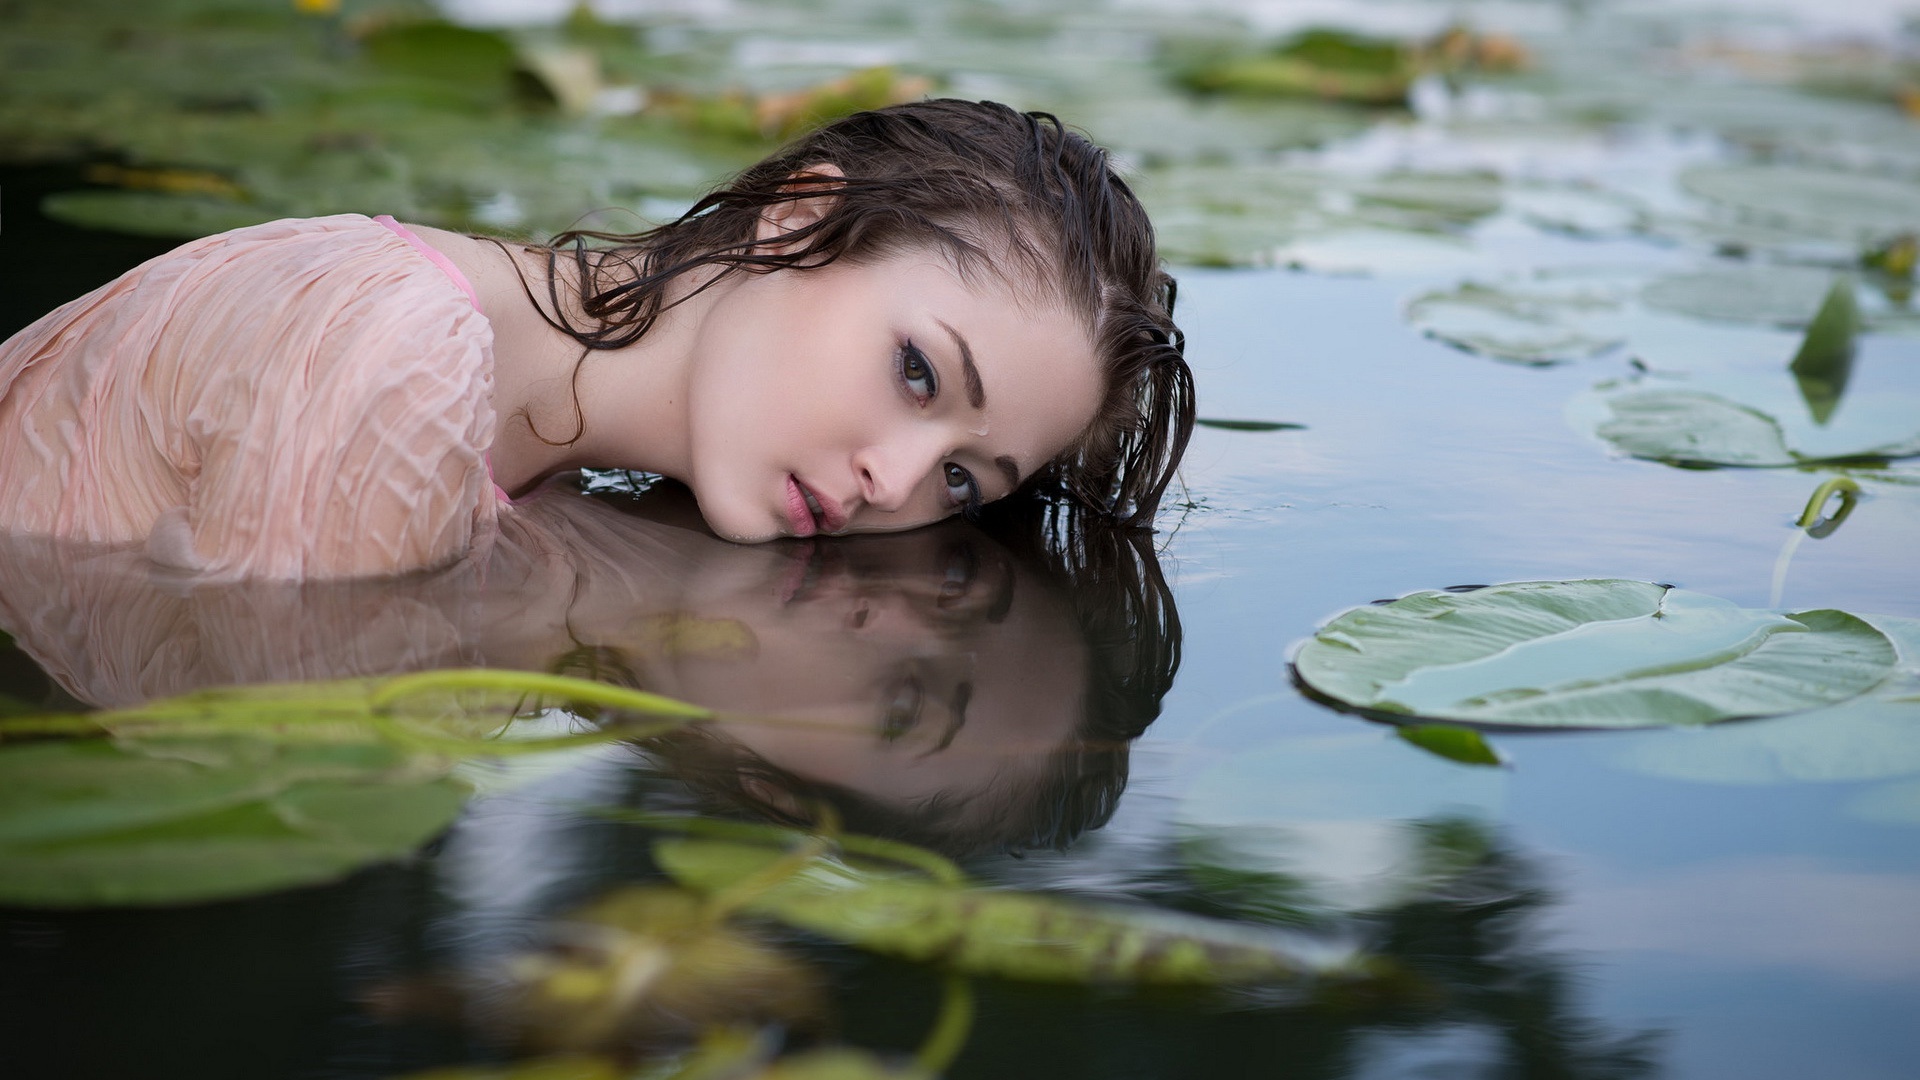 Она плавала в озере. Девушки на озере. Девушка у пруда. Красавица в воде. Девушка купается в пруду.